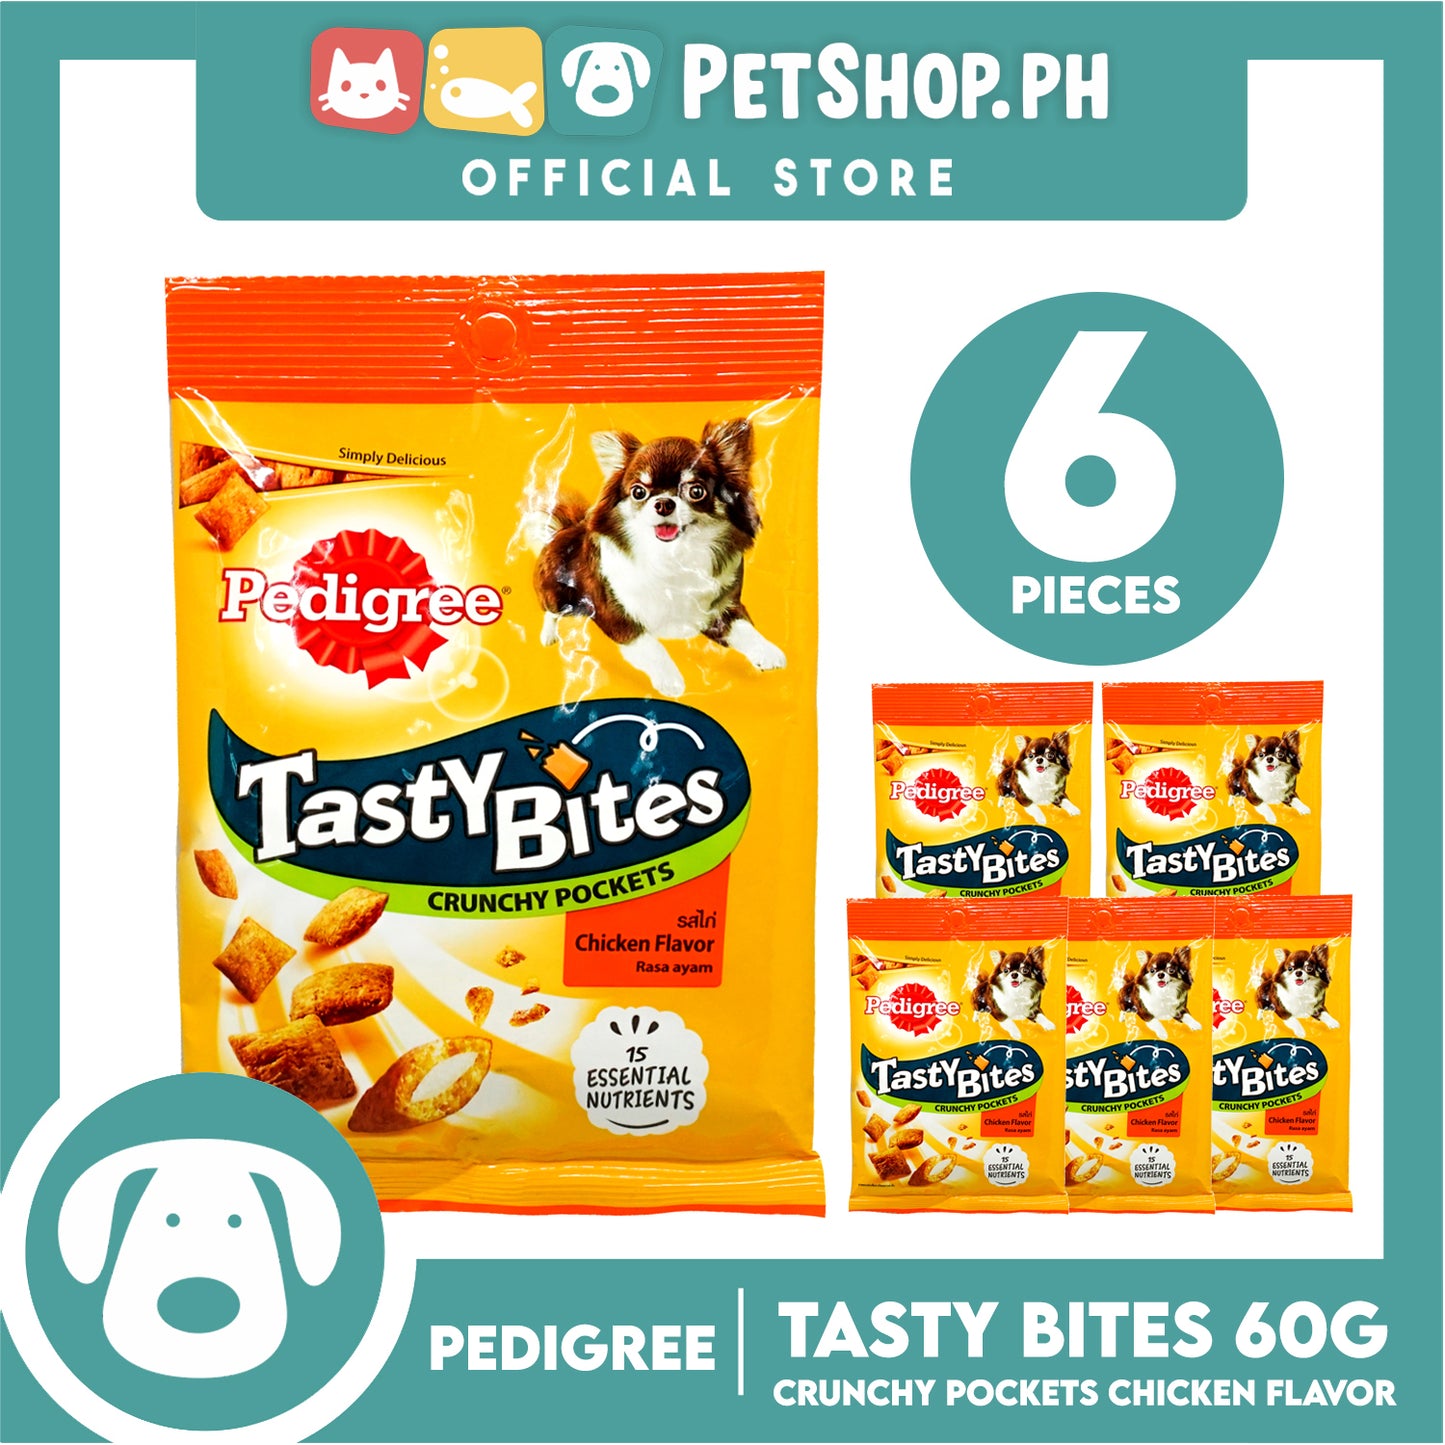 6pcs Pedigree Tasty Bites Crunchy Pockets Chicken Flavor 60g